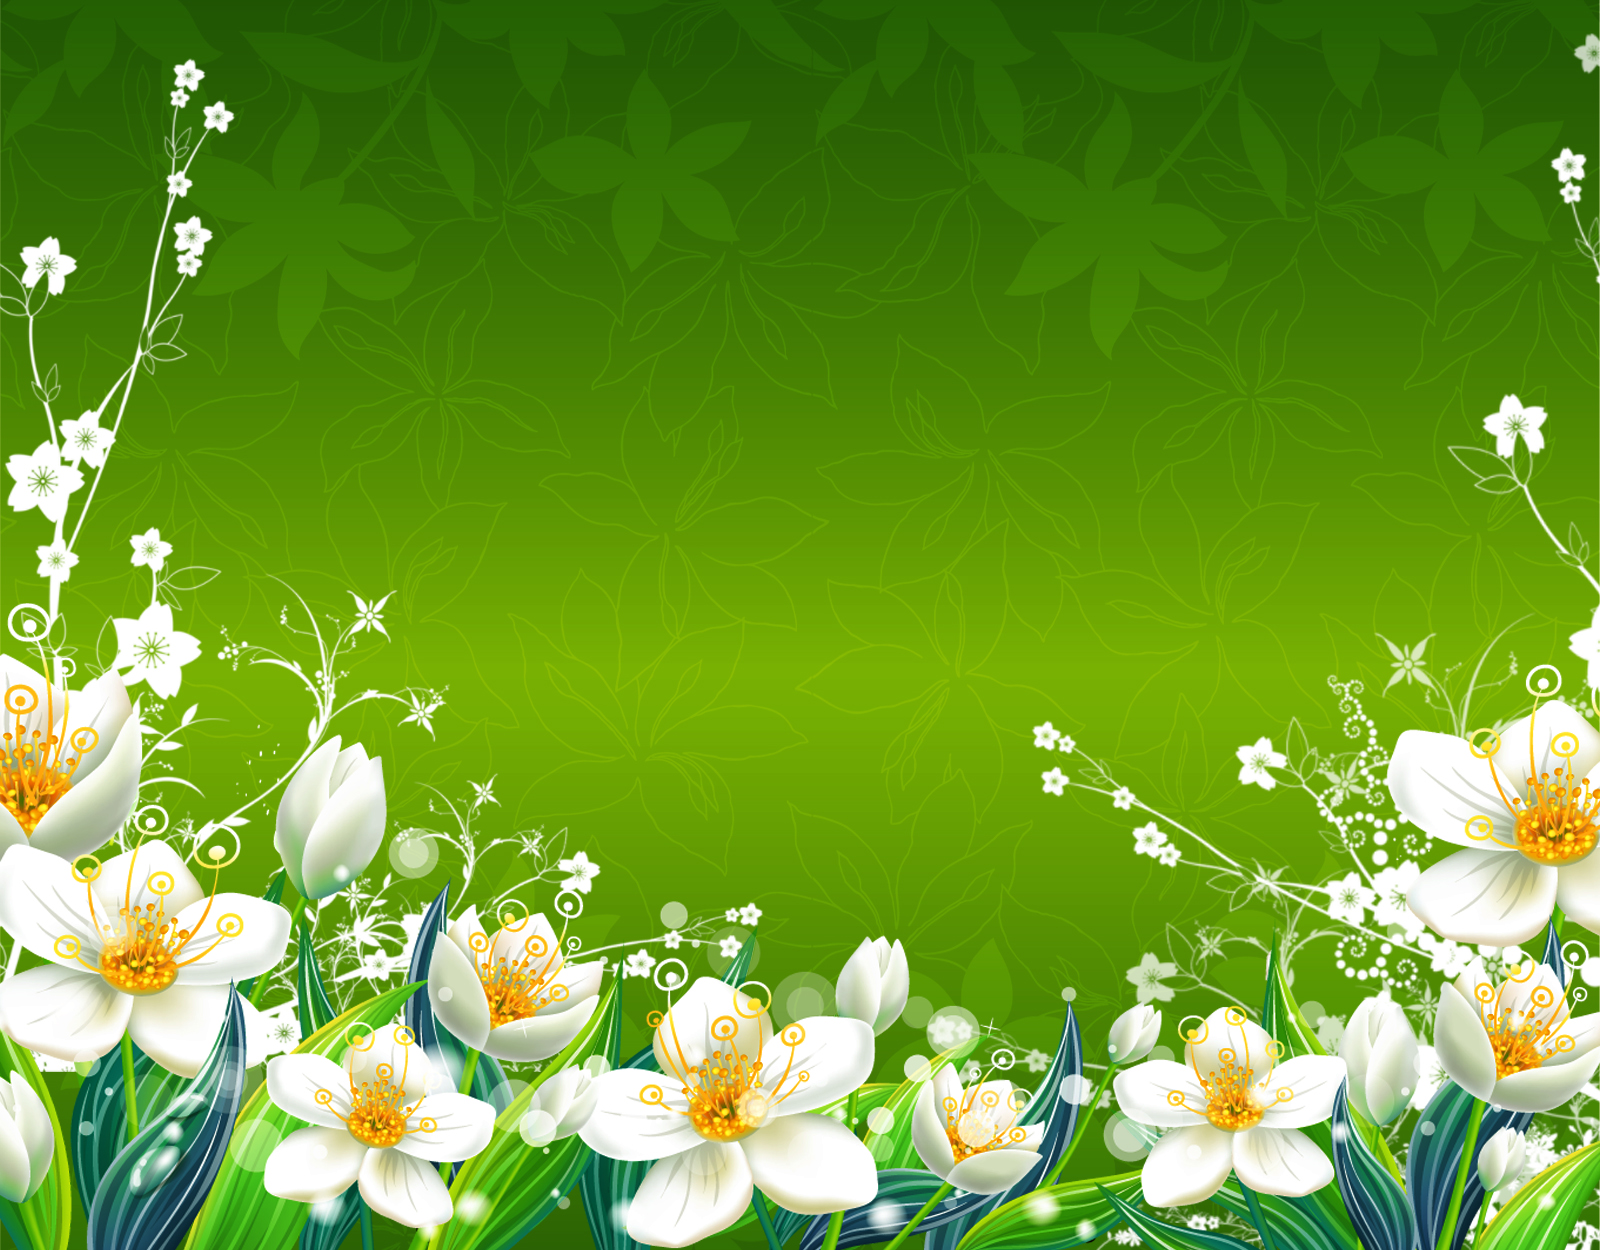 Tổng hợp hình nền Green background design flower cực đẹp với hoa lá đầy ...